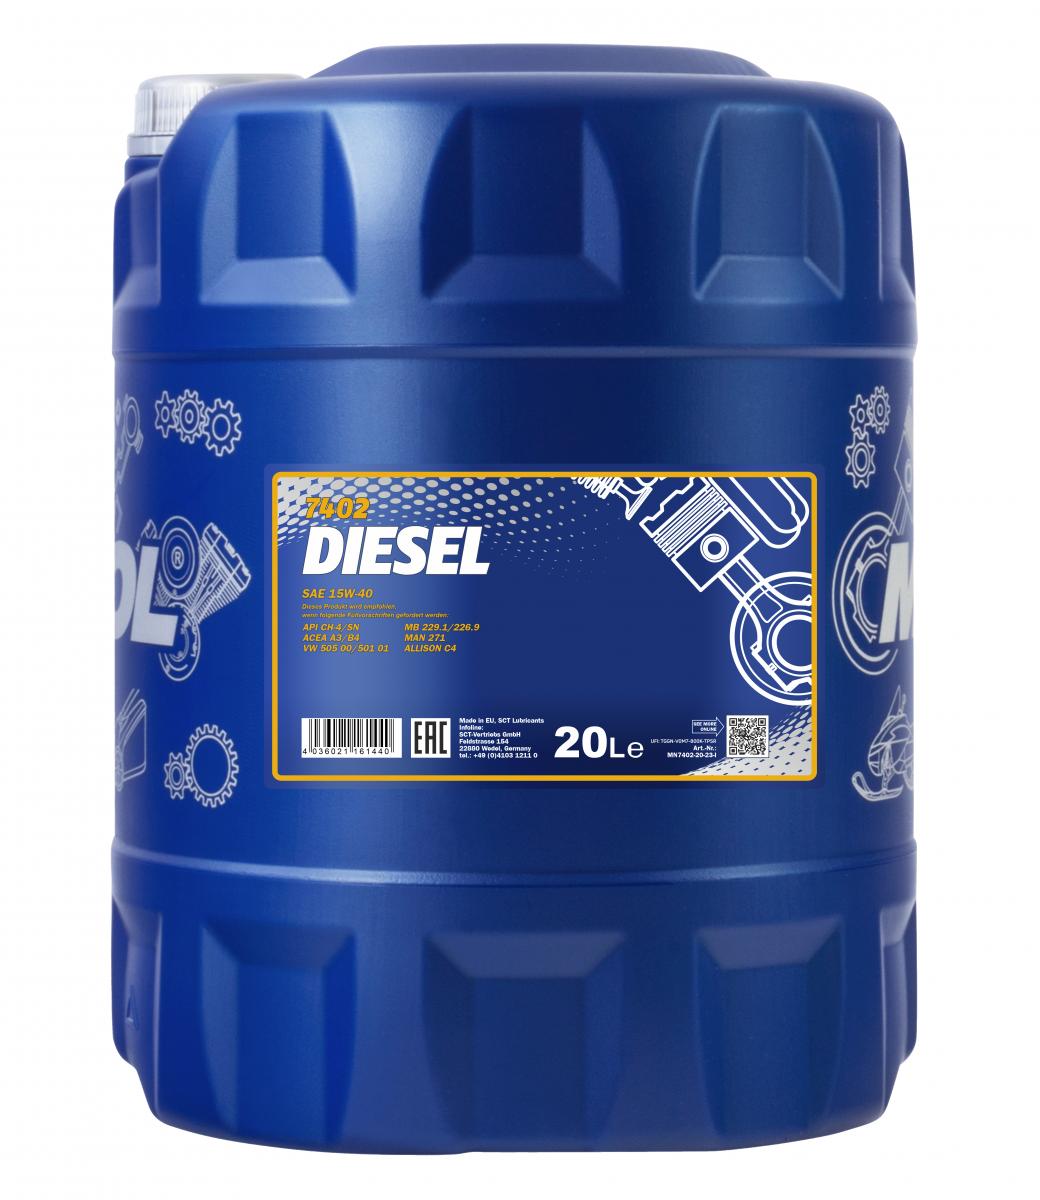 20 Liter MANNOL Diesel 15W-40 CH-4 SL 15W40 Motoröl ÖL 4036021161440